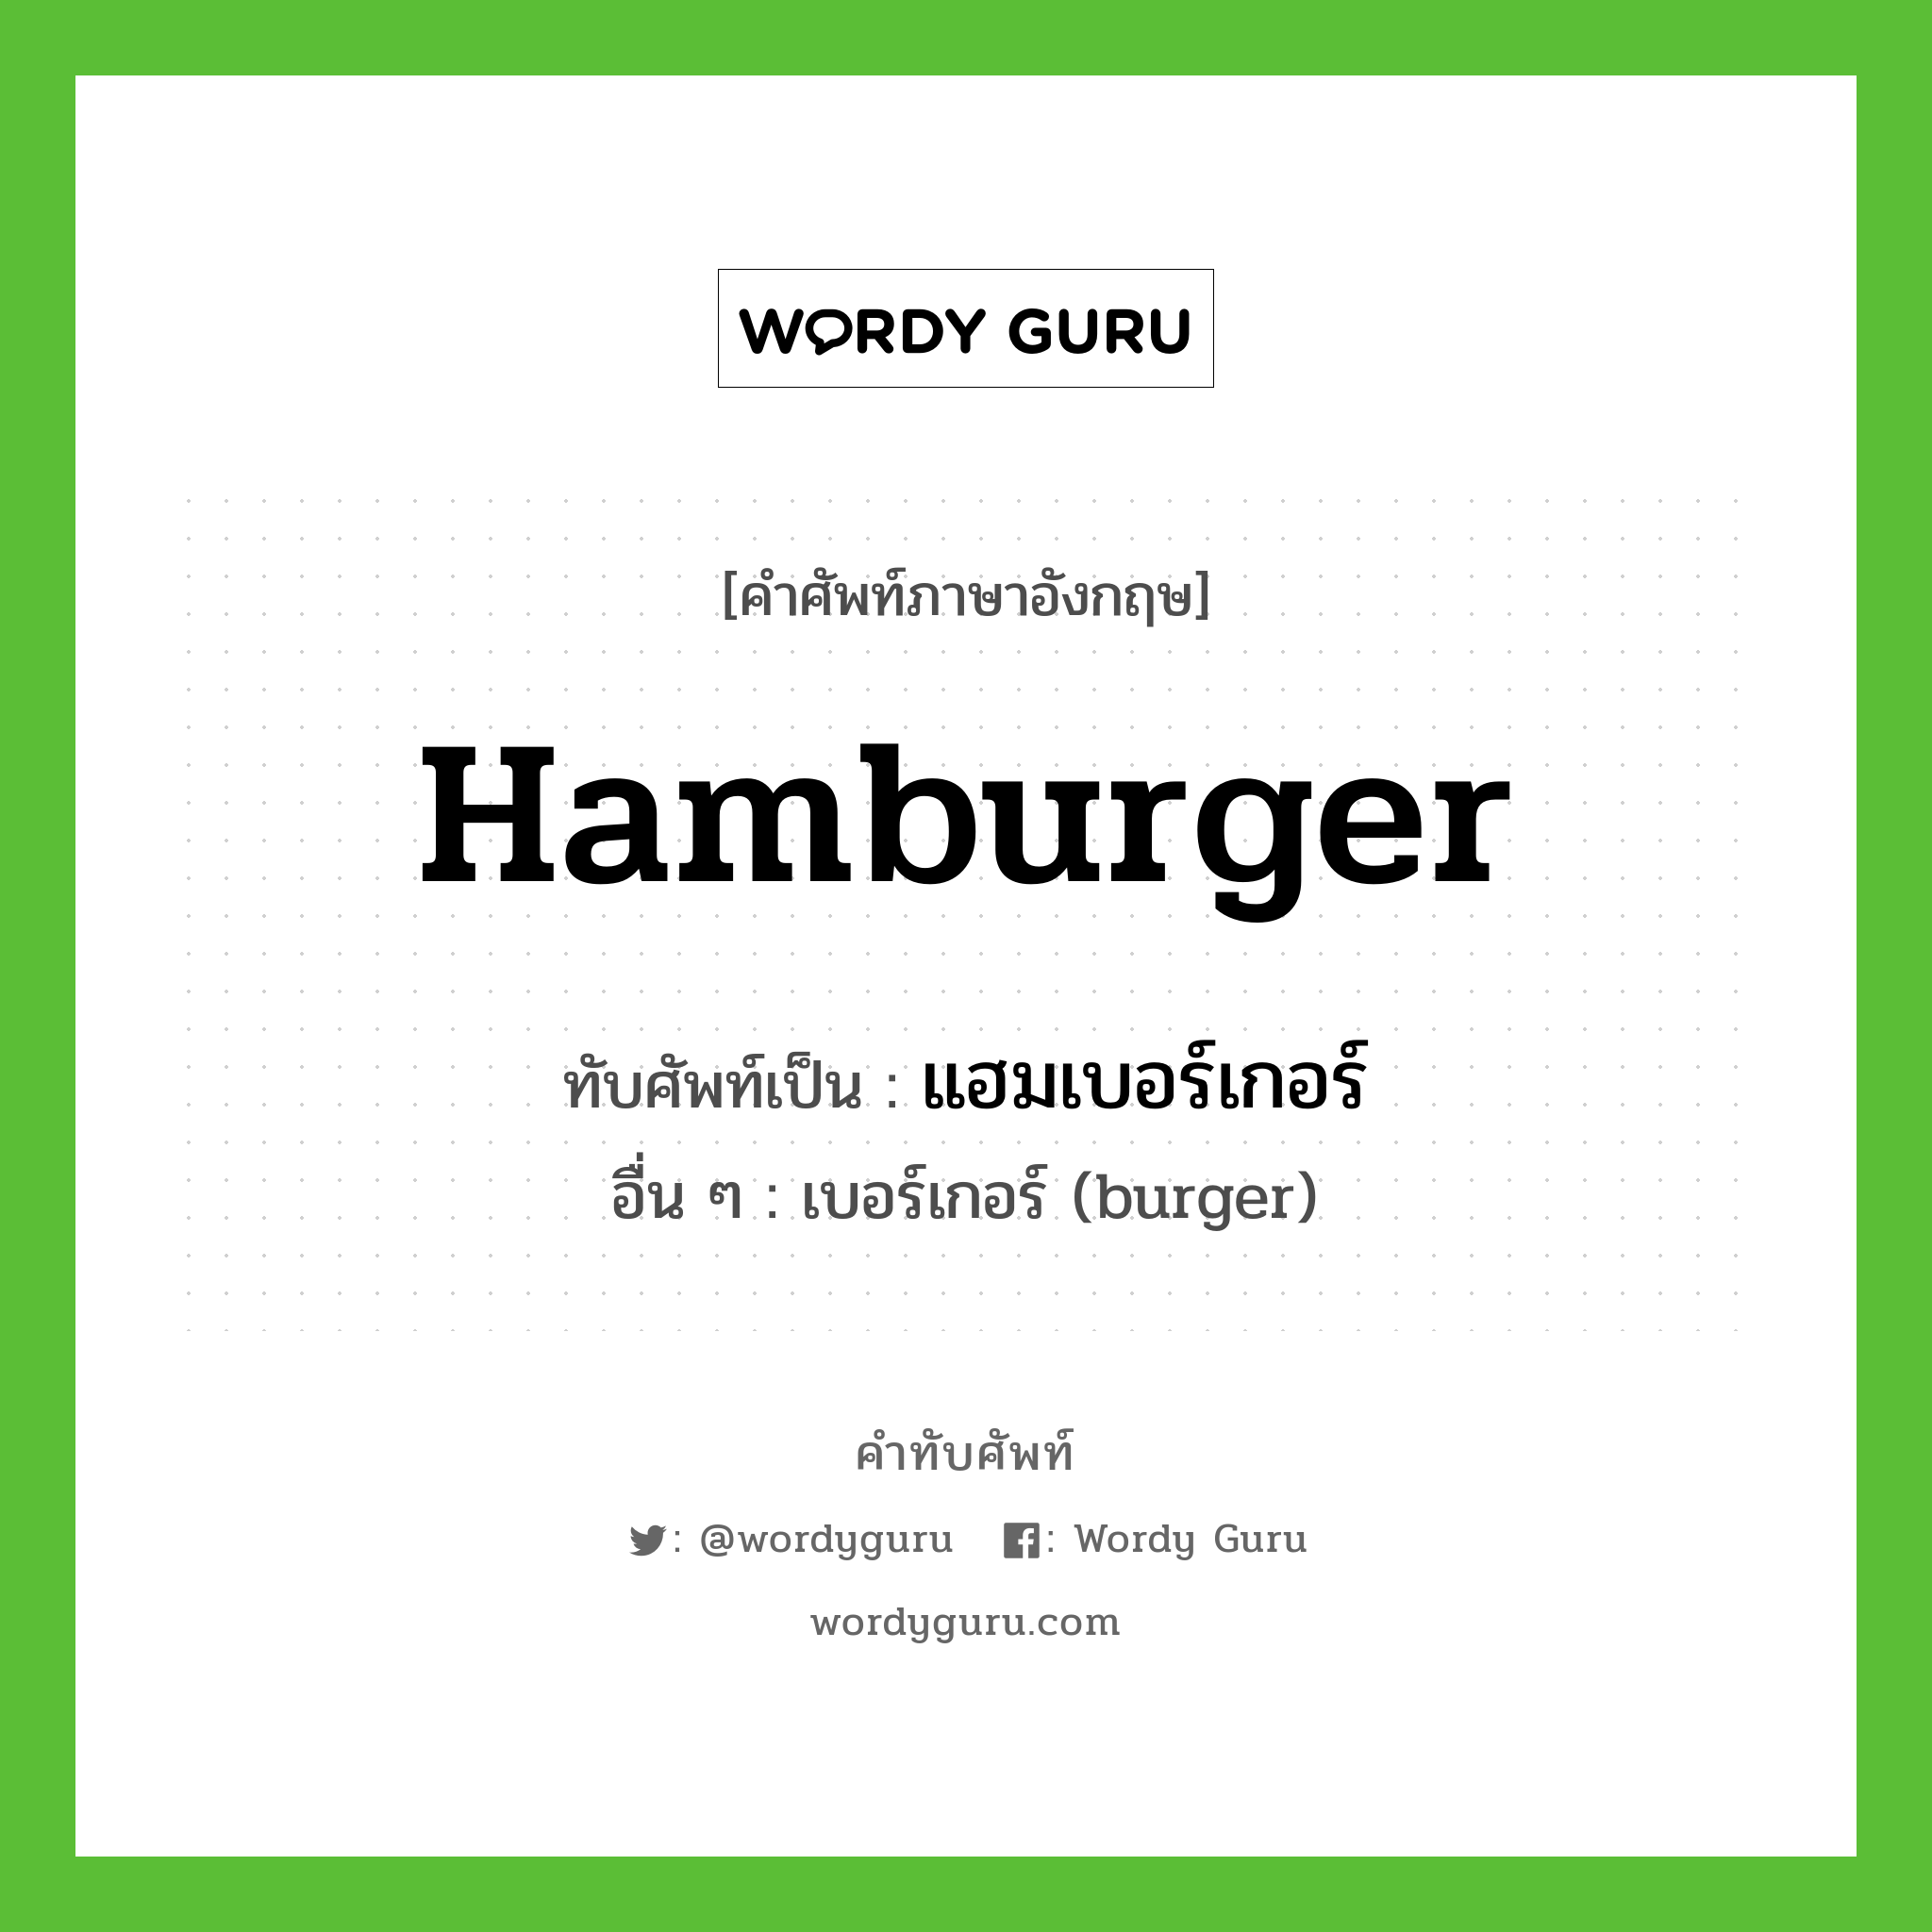 แฮมเบอร์เกอร์ เขียนอย่างไร?, คำศัพท์ภาษาอังกฤษ แฮมเบอร์เกอร์ ทับศัพท์เป็น hamburger อื่น ๆ เบอร์เกอร์ (burger)